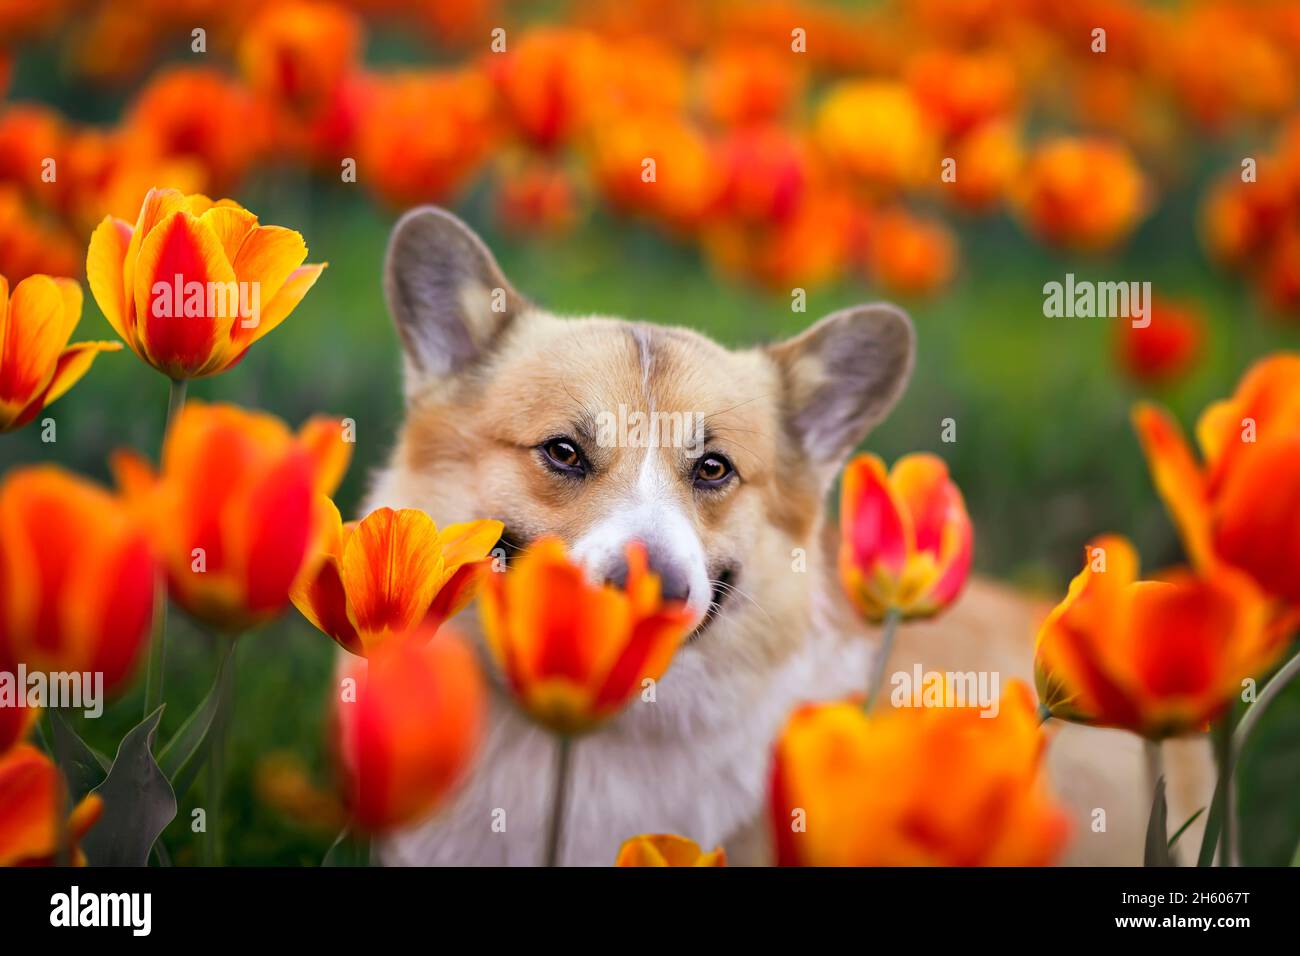 Porträt eines niedlichen Corgi-Hundes, der in einem sonnigen Frühlingsgarten aus einem Blumenbeet mit hellen Tulpenblüten guckt Stockfoto